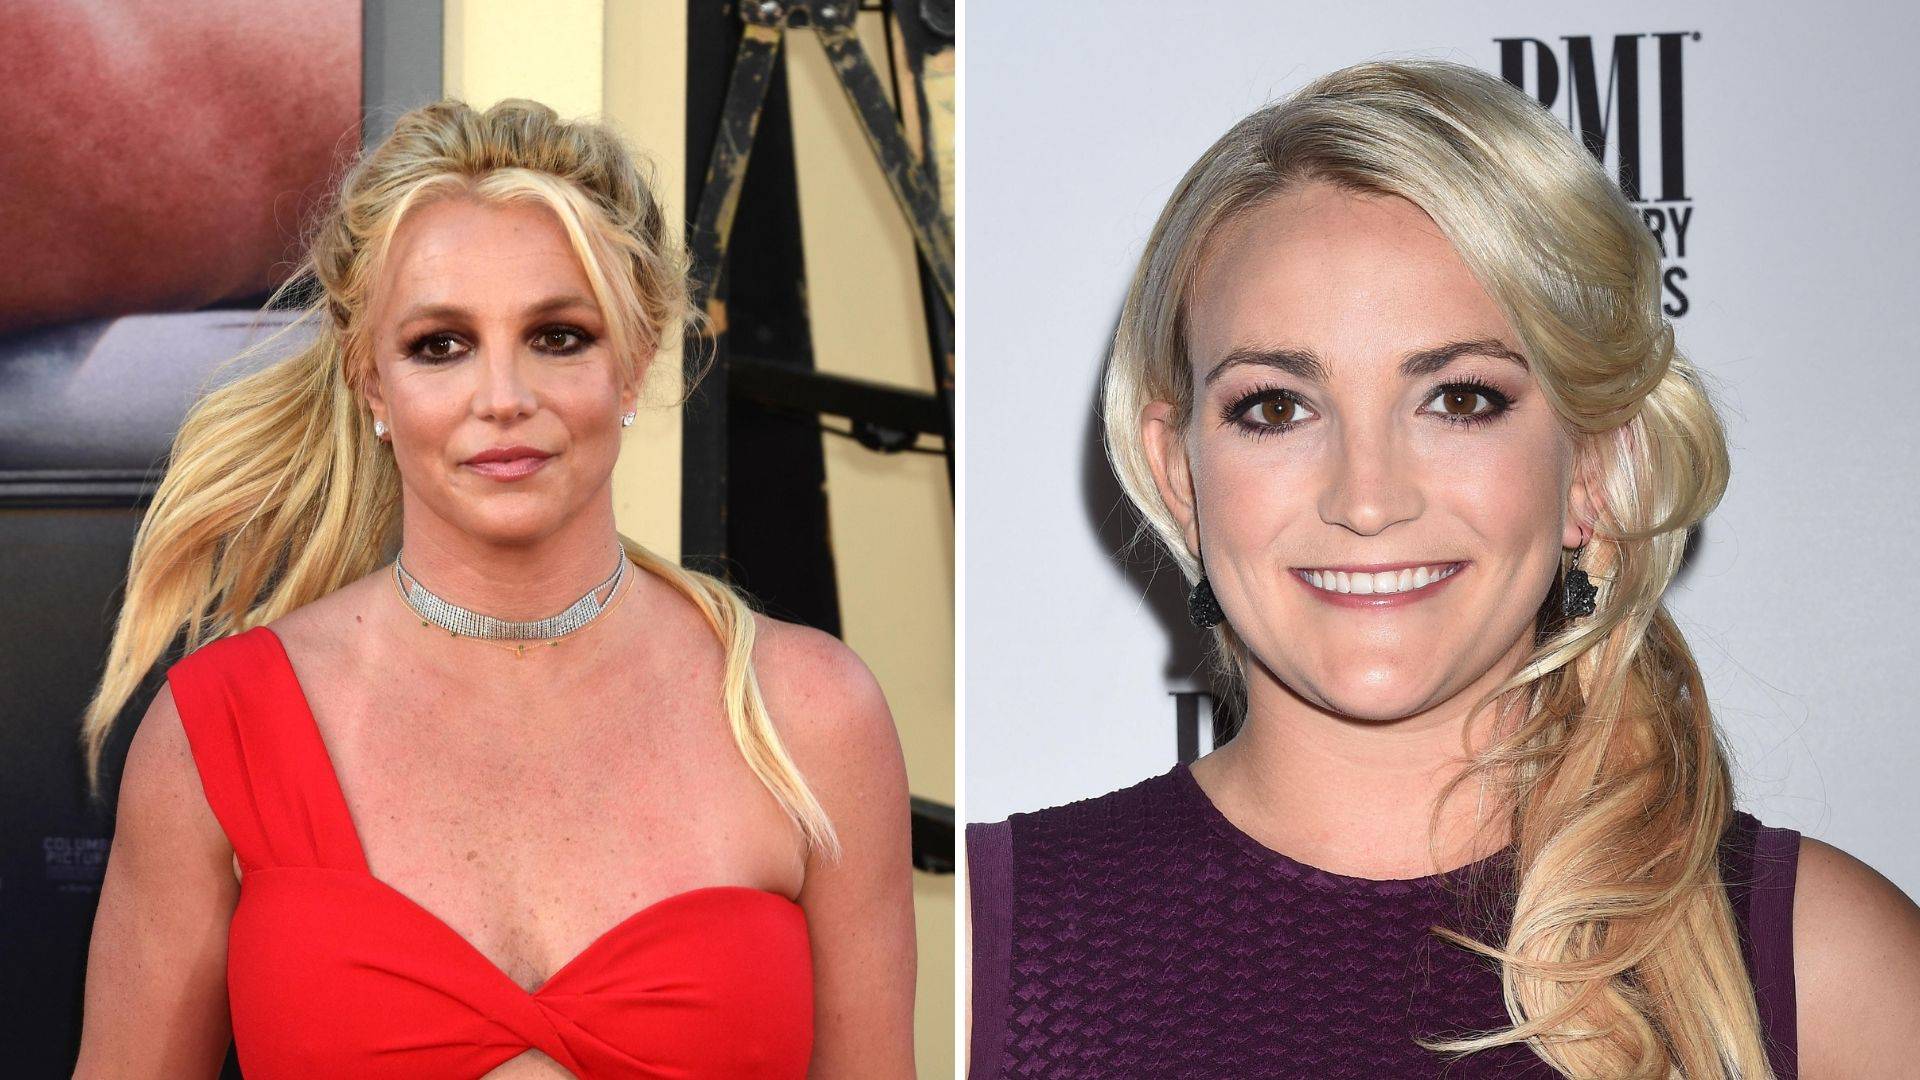 Zaručnik Britney Spears očajan zbog njene svađe sa sestrom: To je skandal, Sam ih želi pomiriti